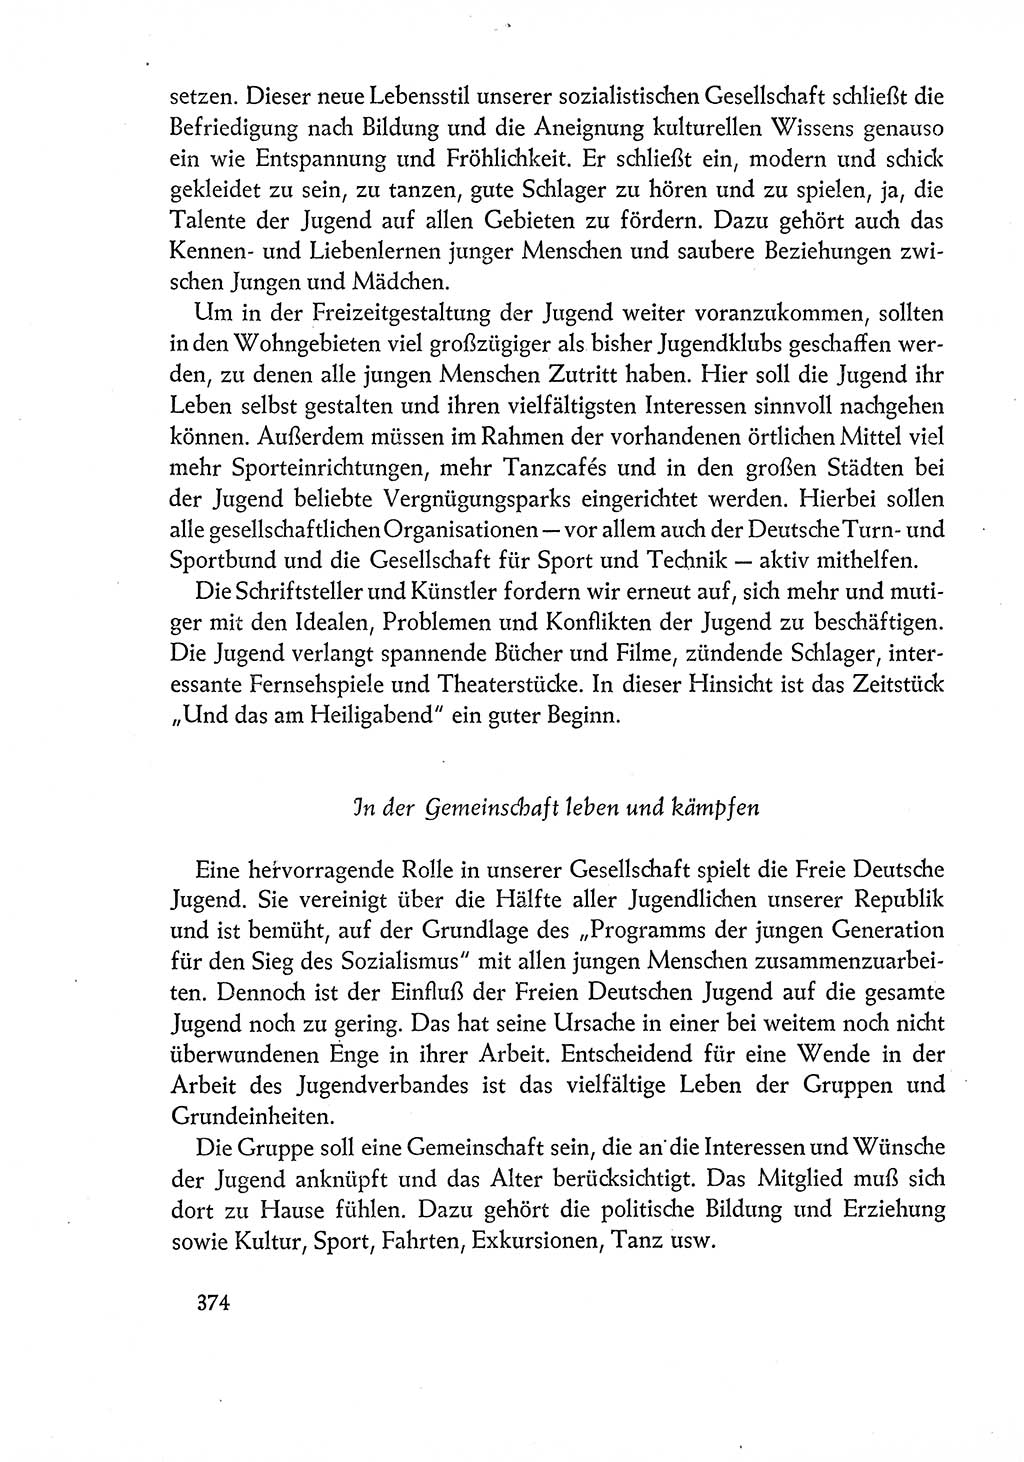 Dokumente der Sozialistischen Einheitspartei Deutschlands (SED) [Deutsche Demokratische Republik (DDR)] 1960-1961, Seite 374 (Dok. SED DDR 1960-1961, S. 374)